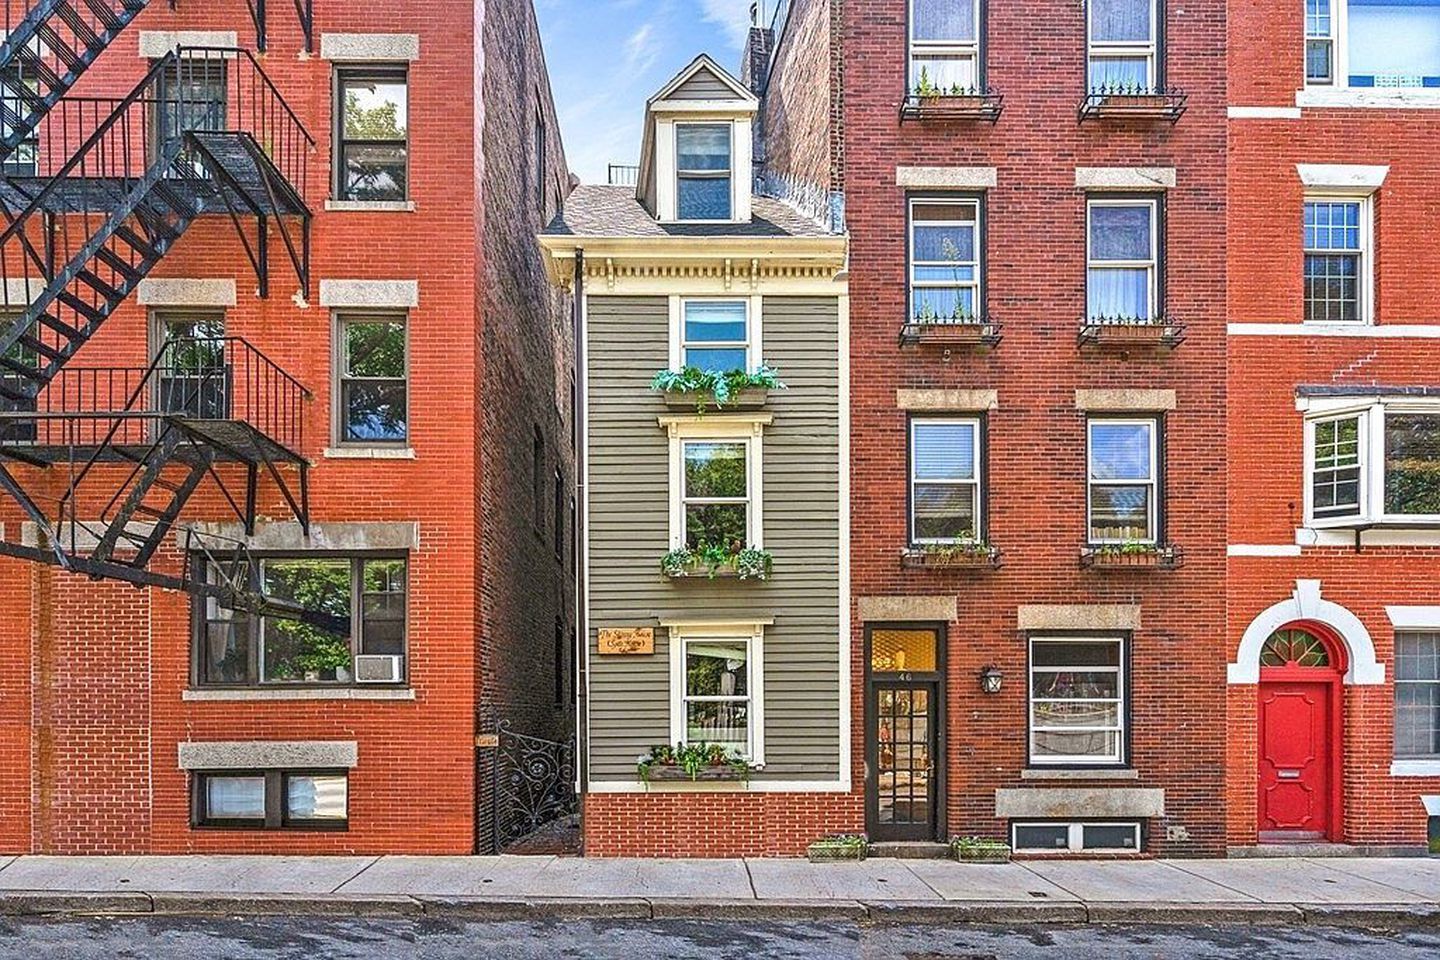 Війна за нерухомість: найвужчий дім Бостона проданий за рекордно високу суму - Нерухомість